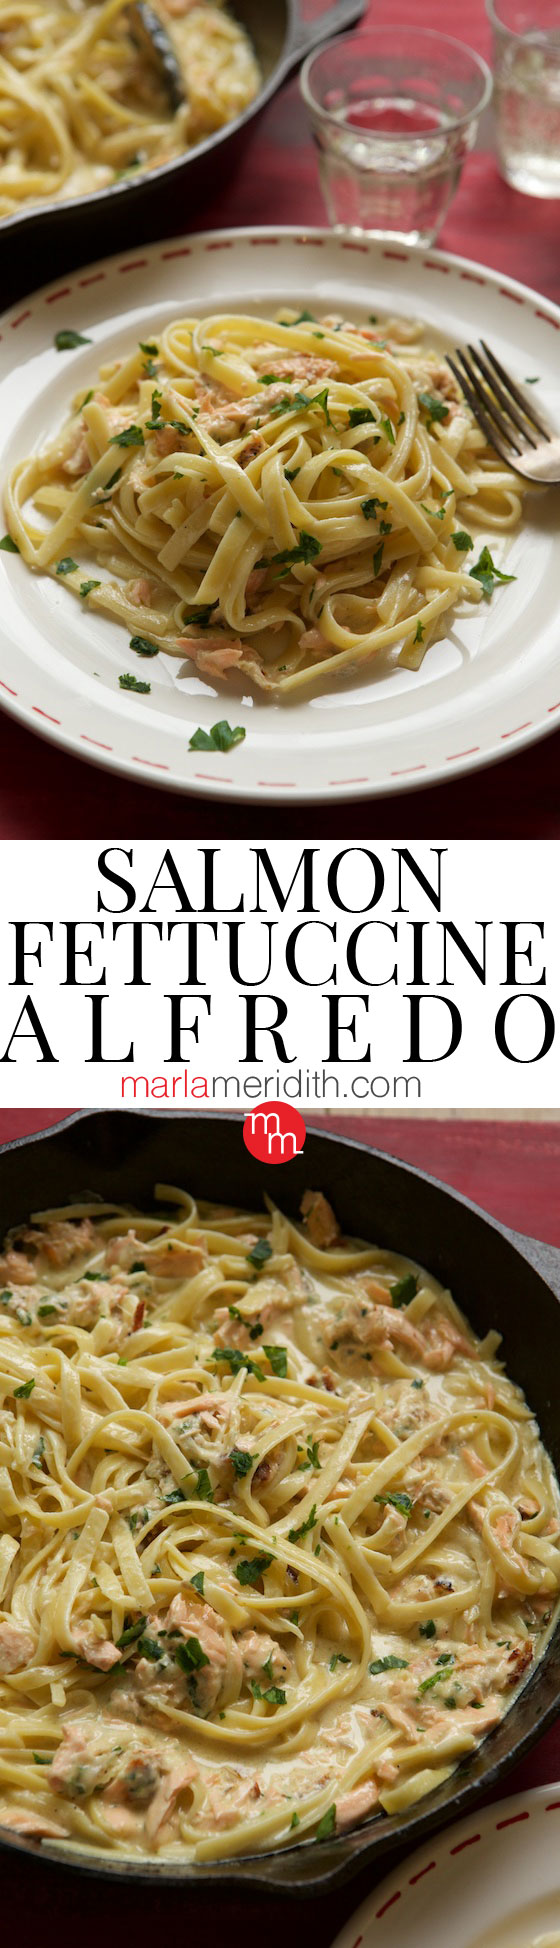 Salmon Fettuccine Alfredo recipe | MarlMeridith.com #recipe #pasta